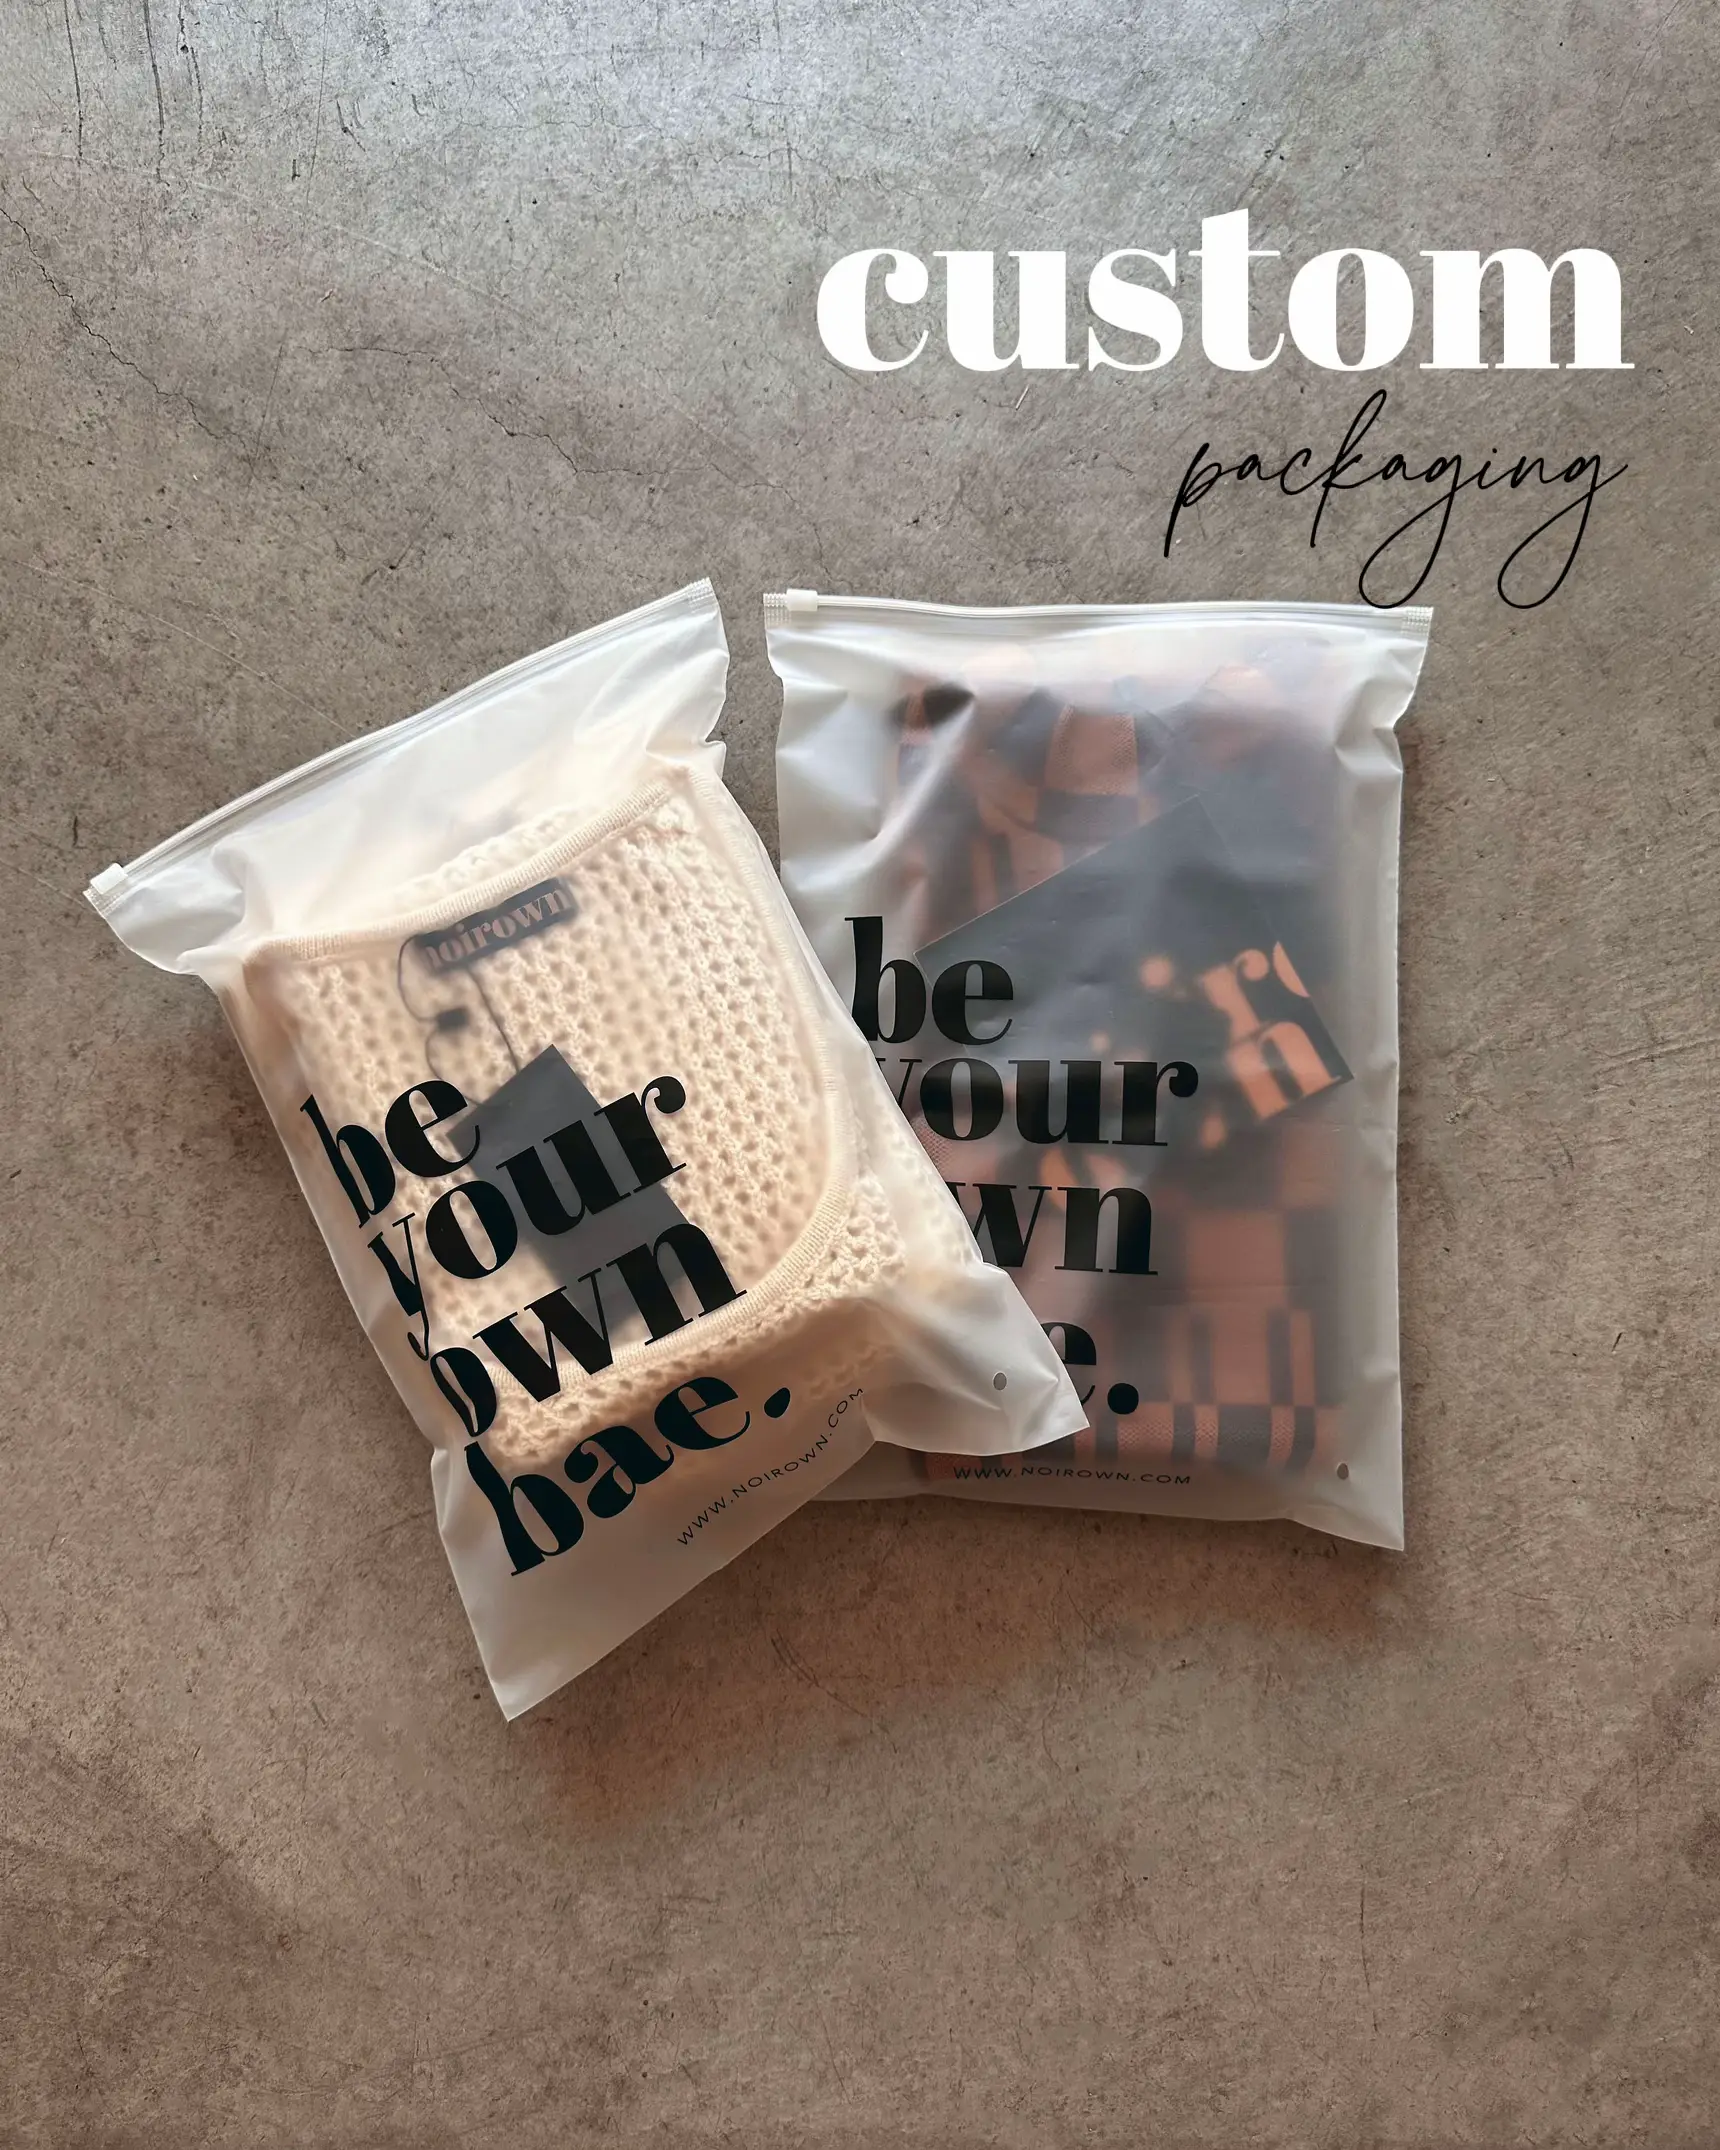 custom poly packaging